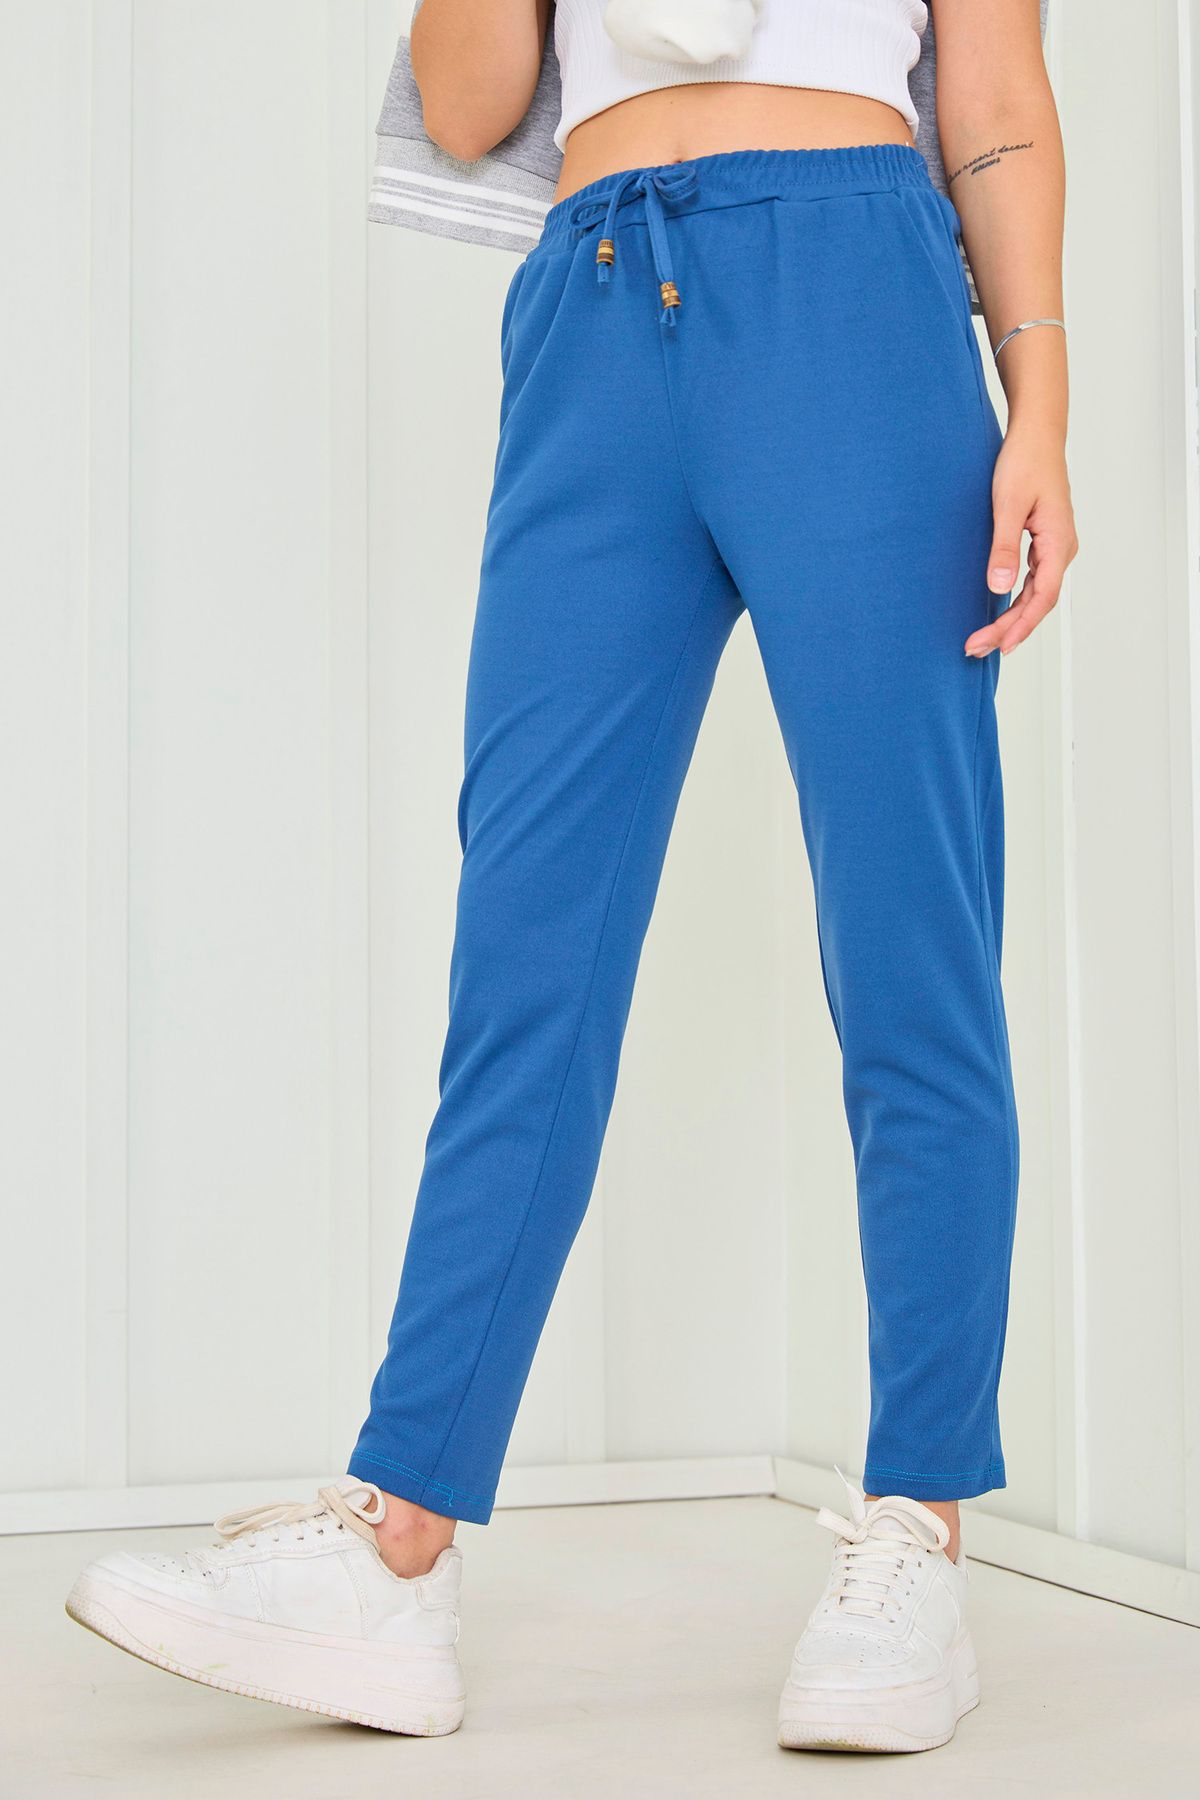 TOFİSA Düz Orta Kadın Mavi Pantolon - 23025